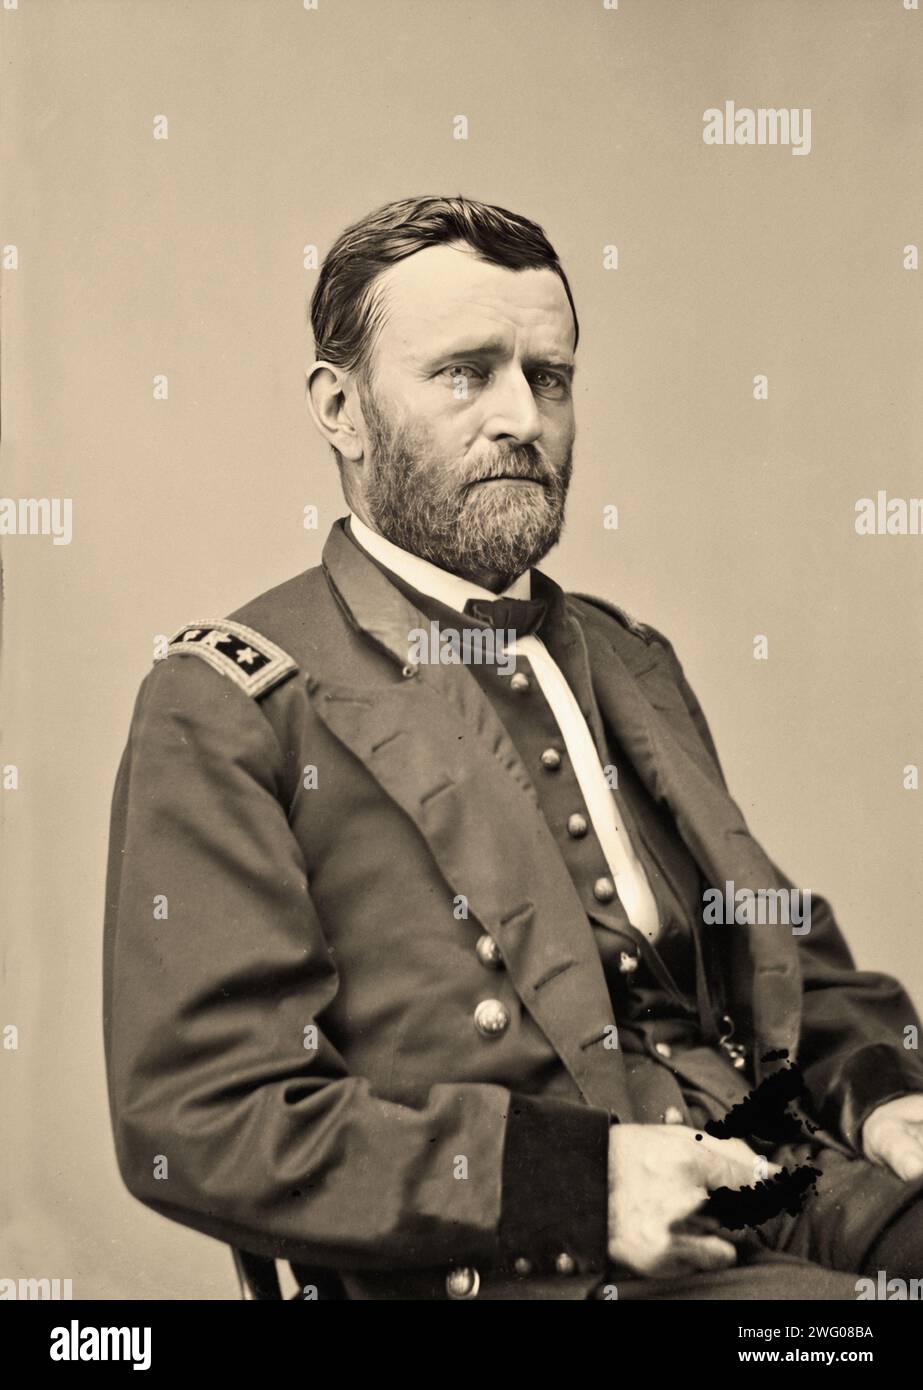 Porträt von Ulysses S. Grant in Militäruniform, einem amerikanischen Militäroffizier und Politiker, der von 1869 bis 1877 als 18. Präsident der Vereinigten Staaten diente. Als kommandierender General führte er die Union Army zum Sieg im Amerikanischen Bürgerkrieg Stockfoto